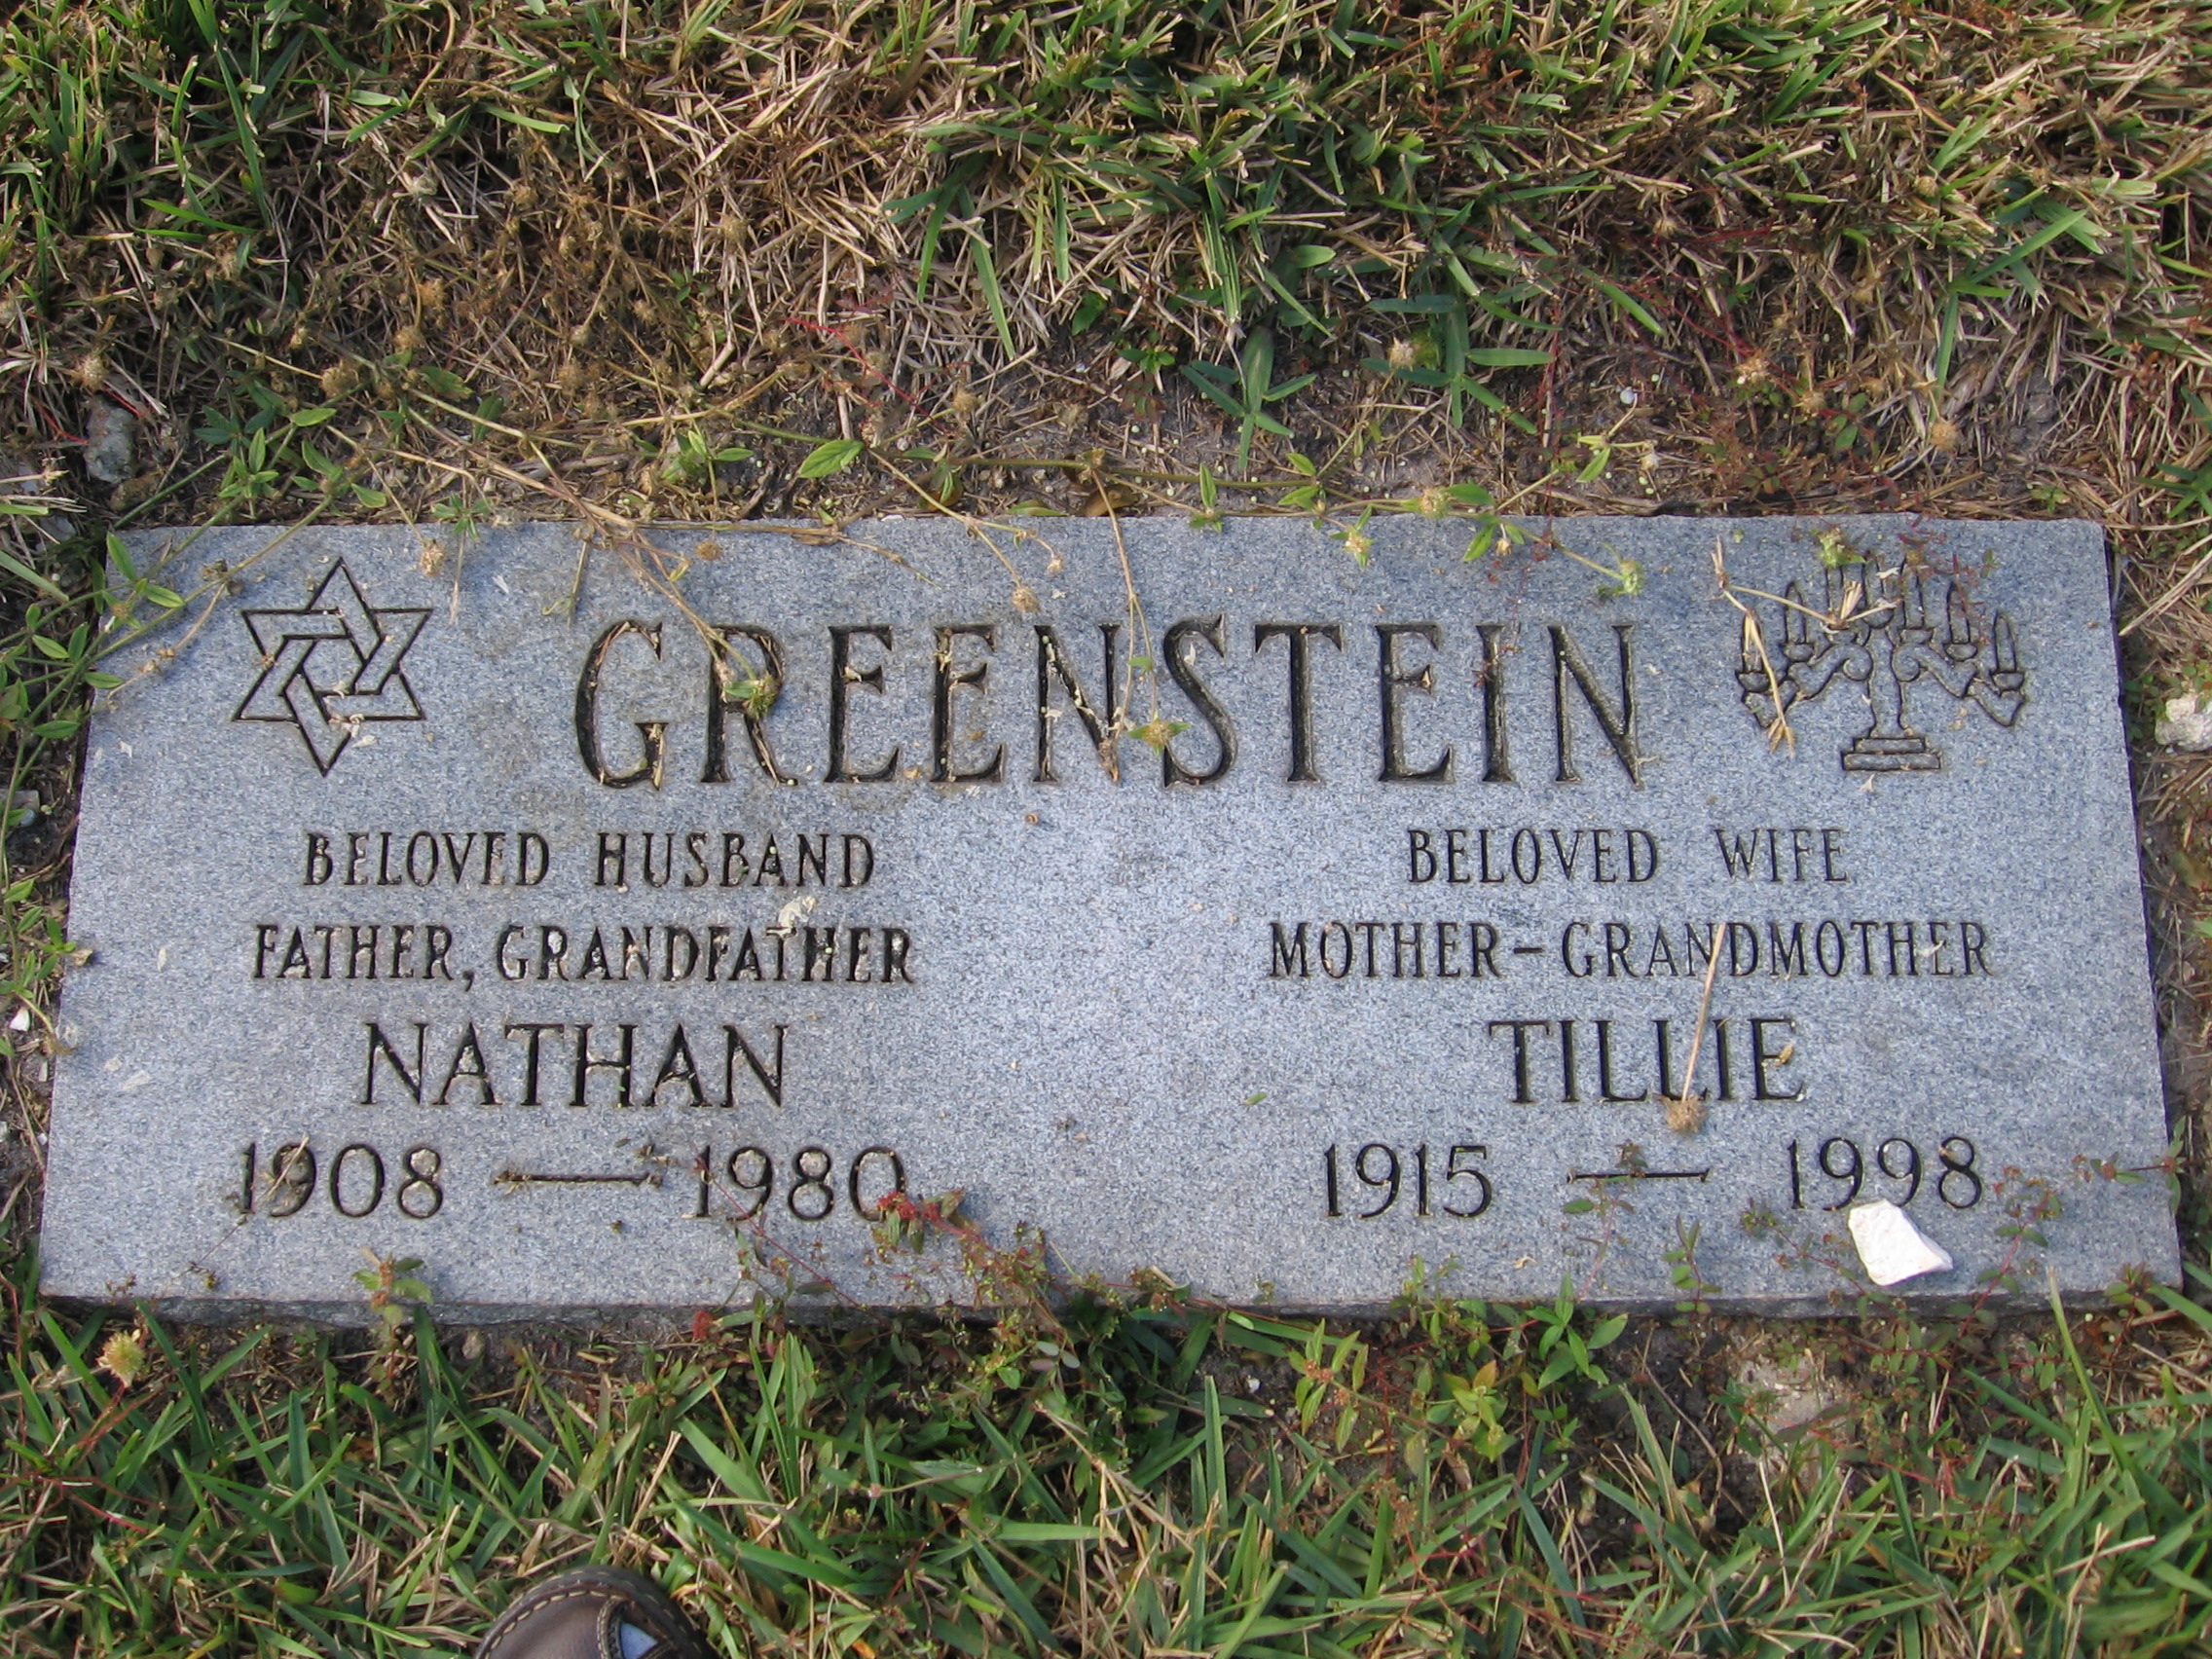 Nathan Greenstein